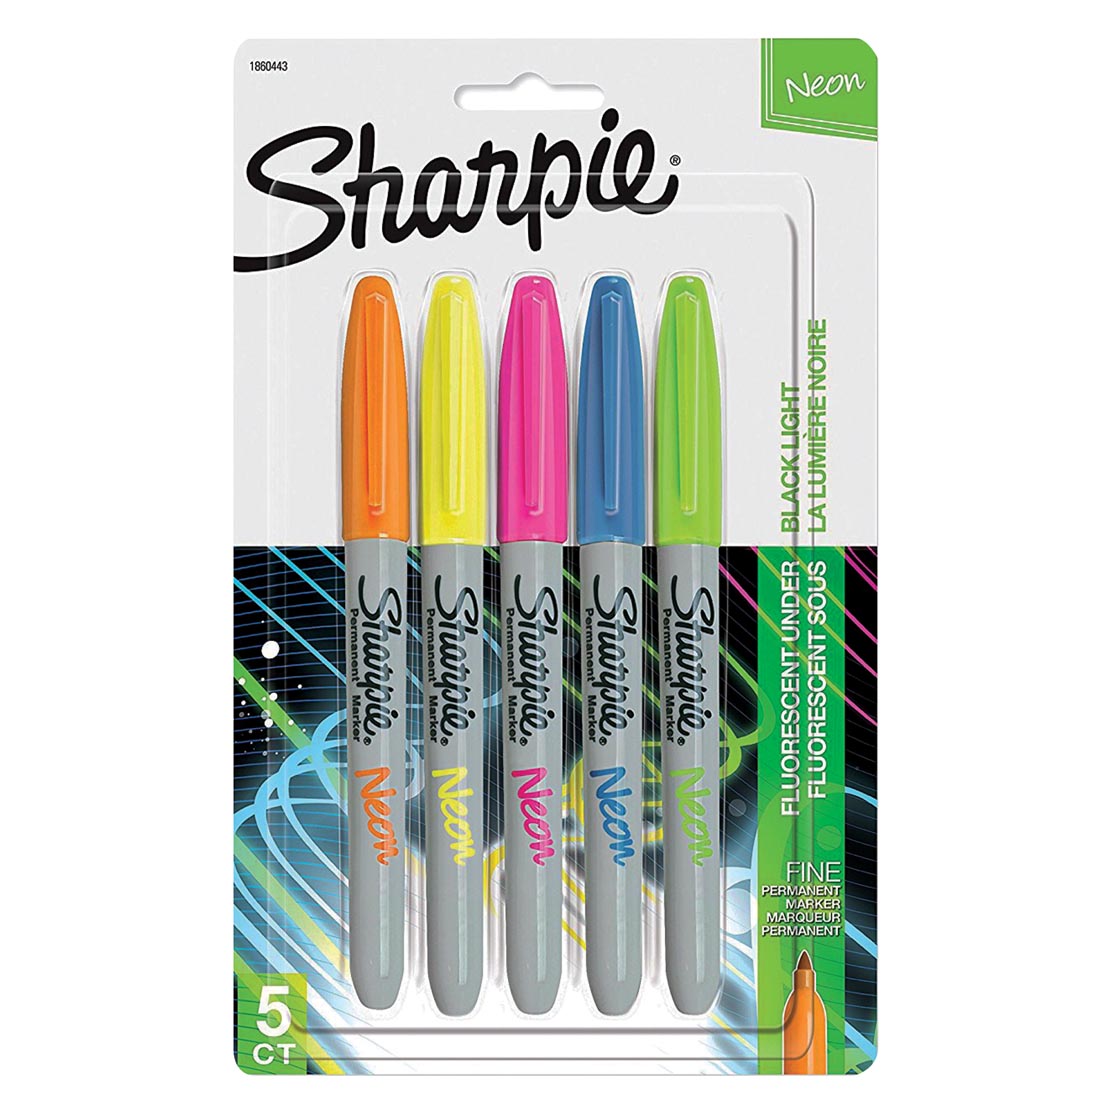 Sharpie Fine Point Neon Permanent Marker 5-Color Set